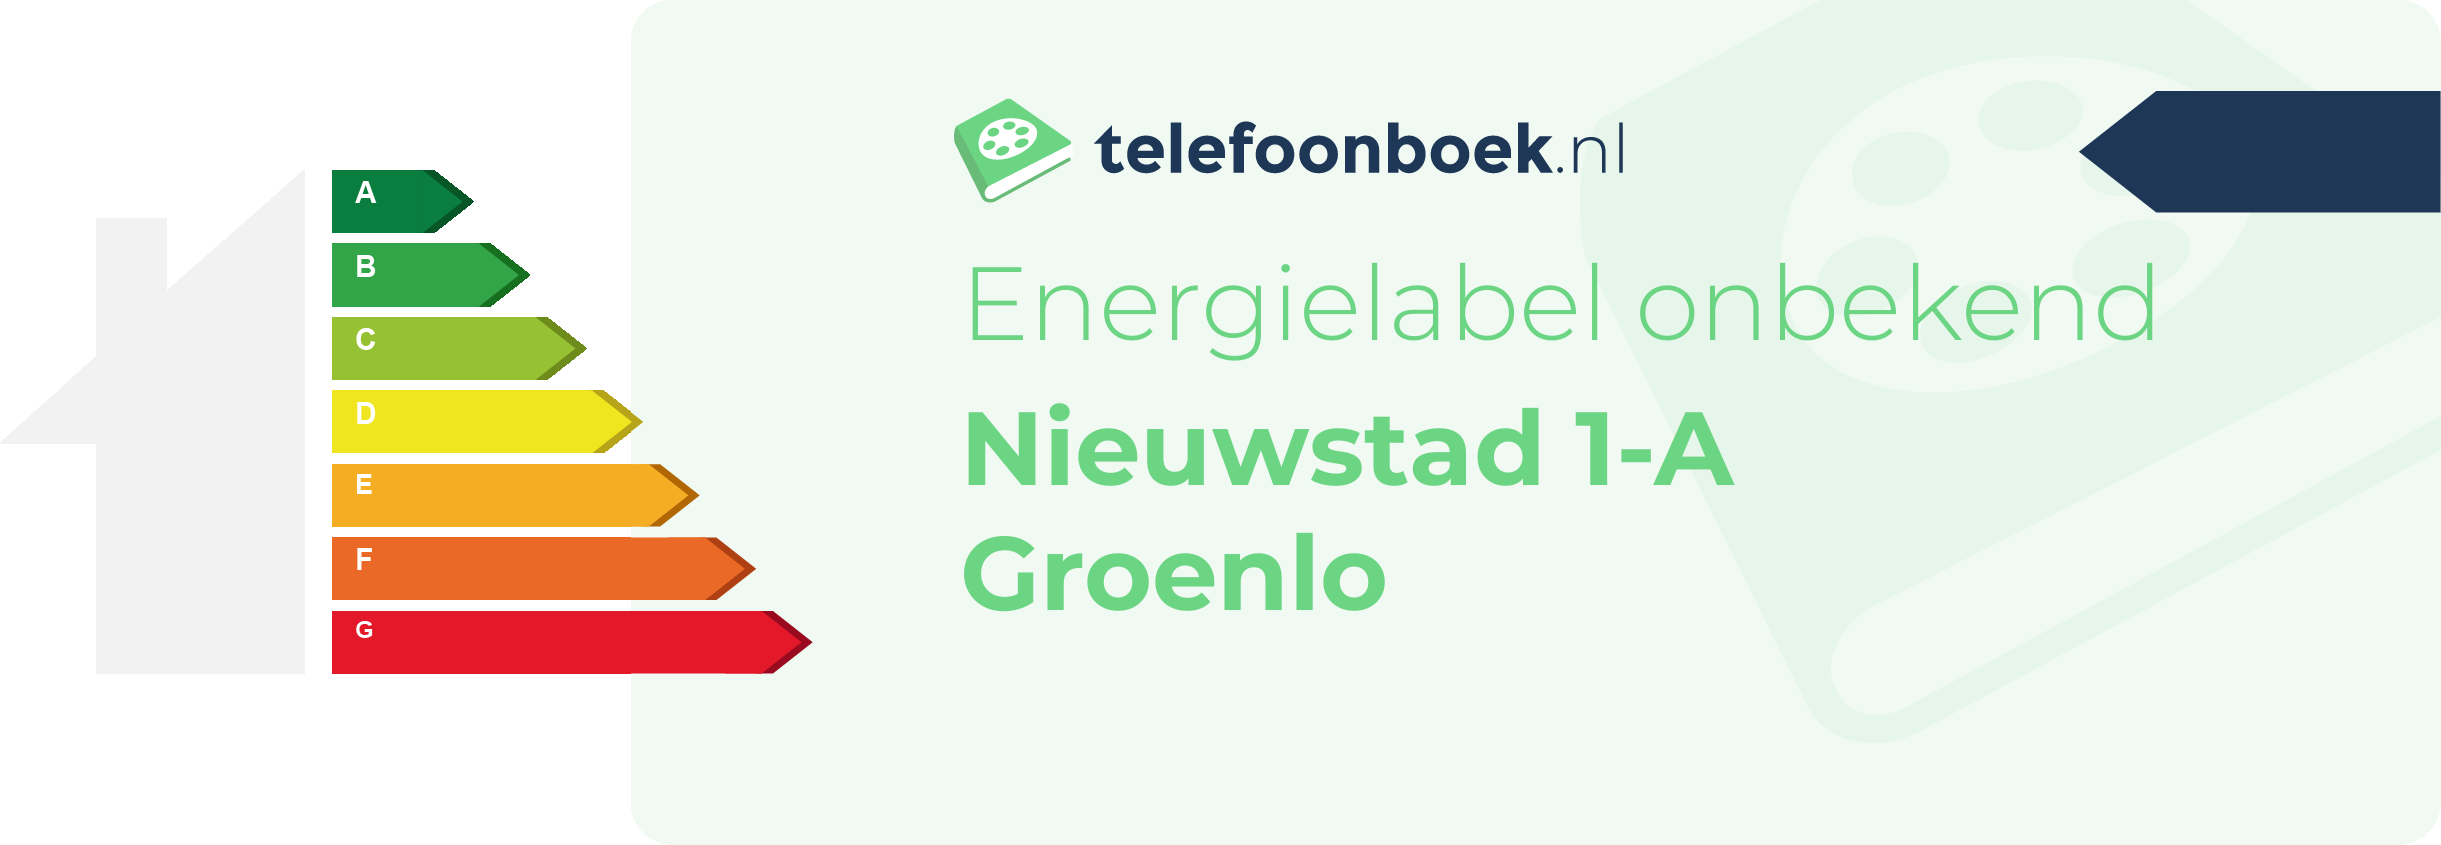 Energielabel Nieuwstad 1-A Groenlo